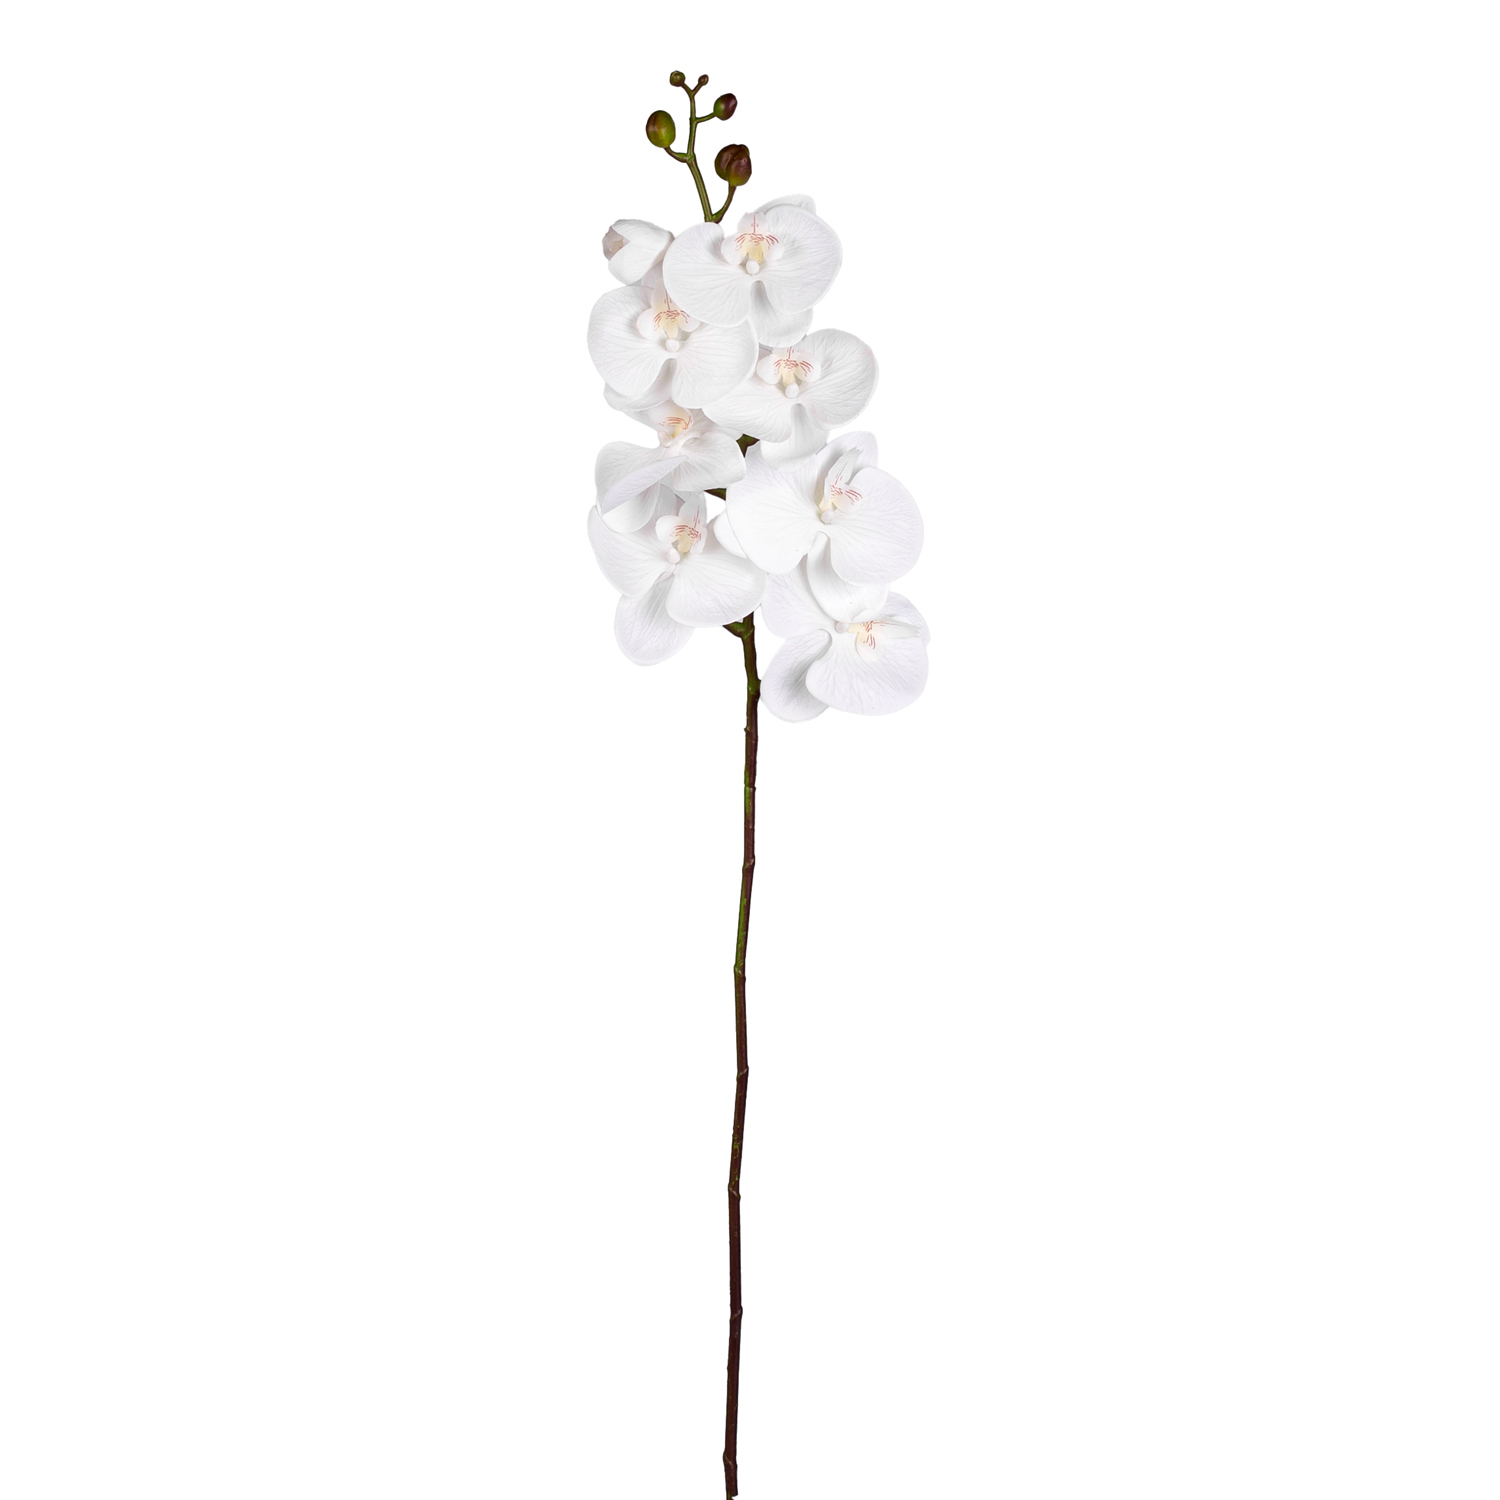 Yapay Orkide Gerçek Dokunuş Beyaz 104 Cm.